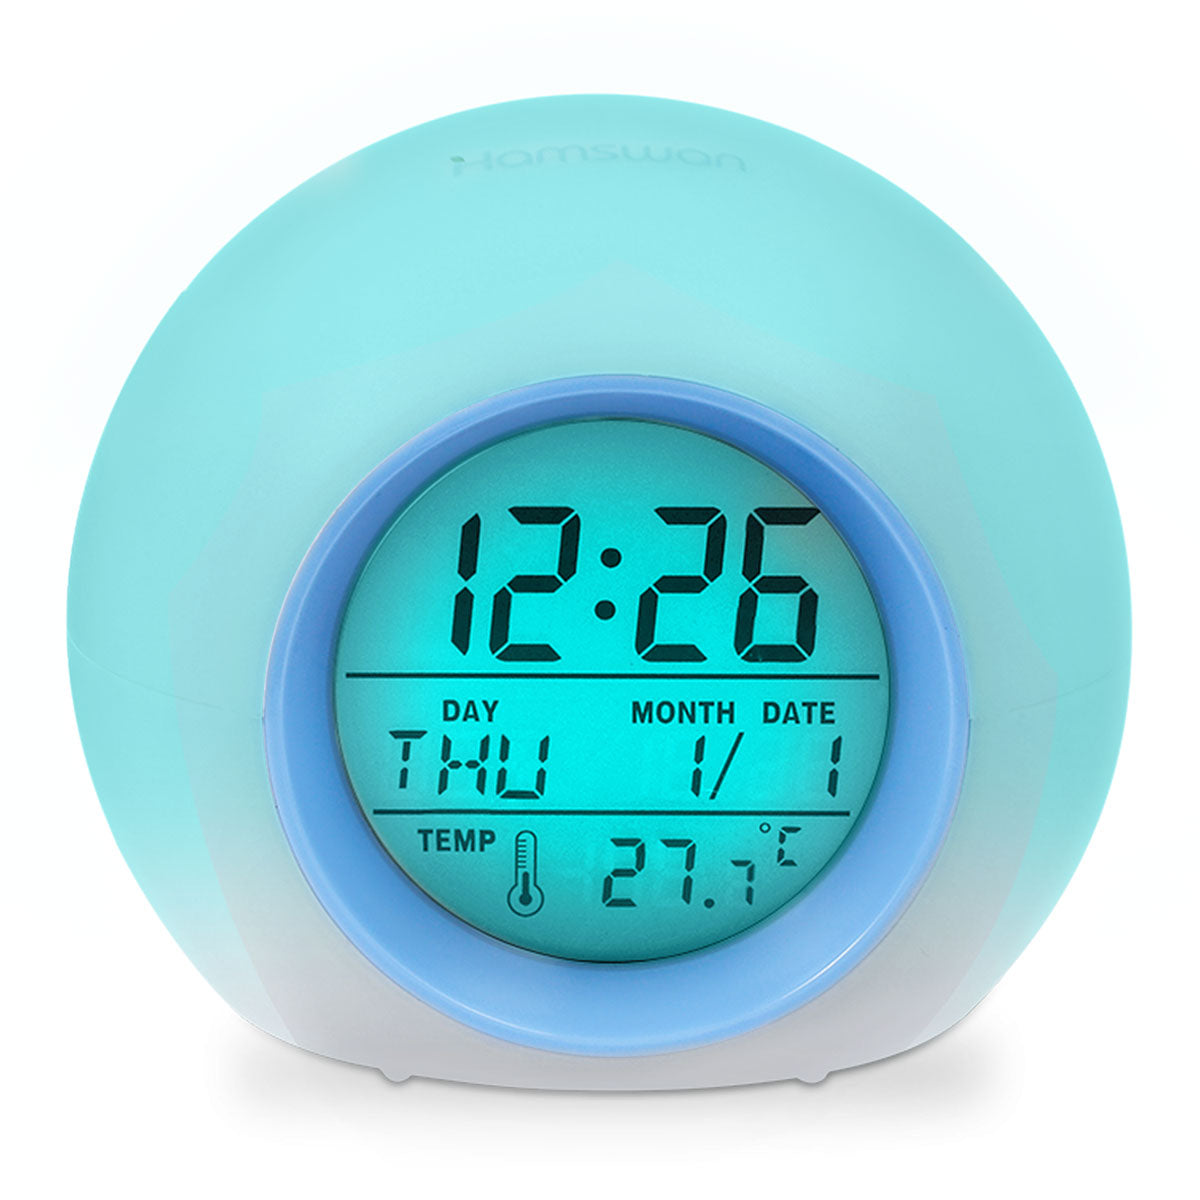 HAMSWAN Despertadores, Regalos Clock Reloi Alarma Despertadores de Niños Cambiado Entre 7 Colores con 8 Tonos Tempreatura para Padres Estudios y Niños ect. 